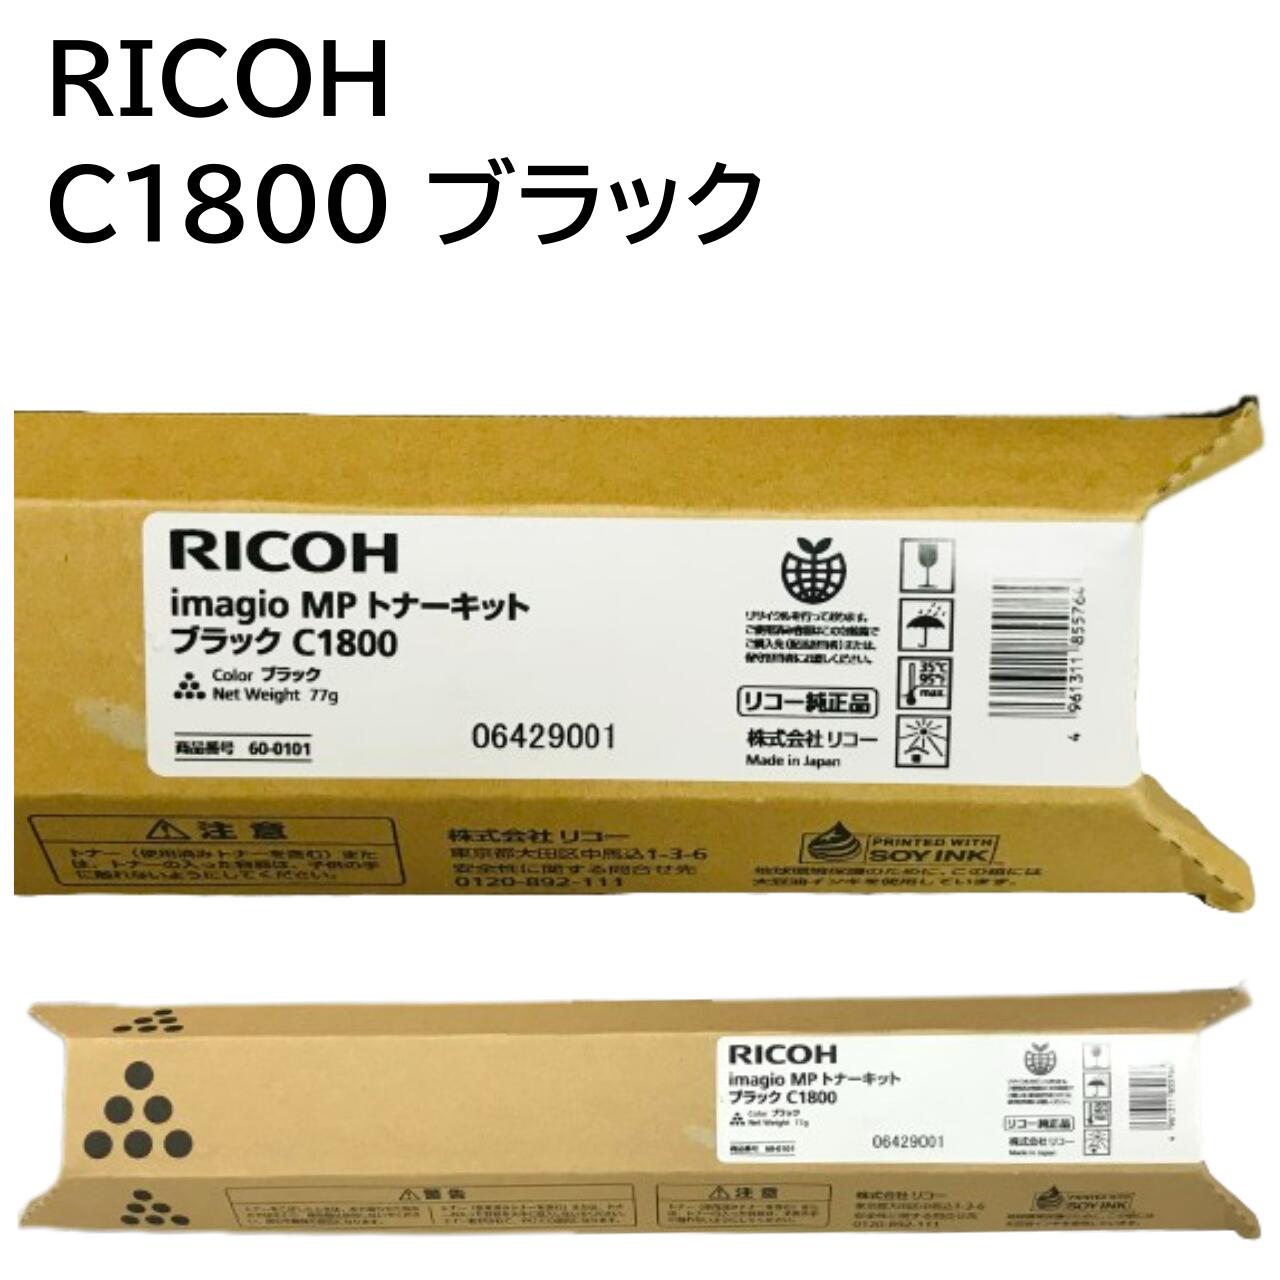 RICOH IMAGIO MP トナーキット ブラック C1800-